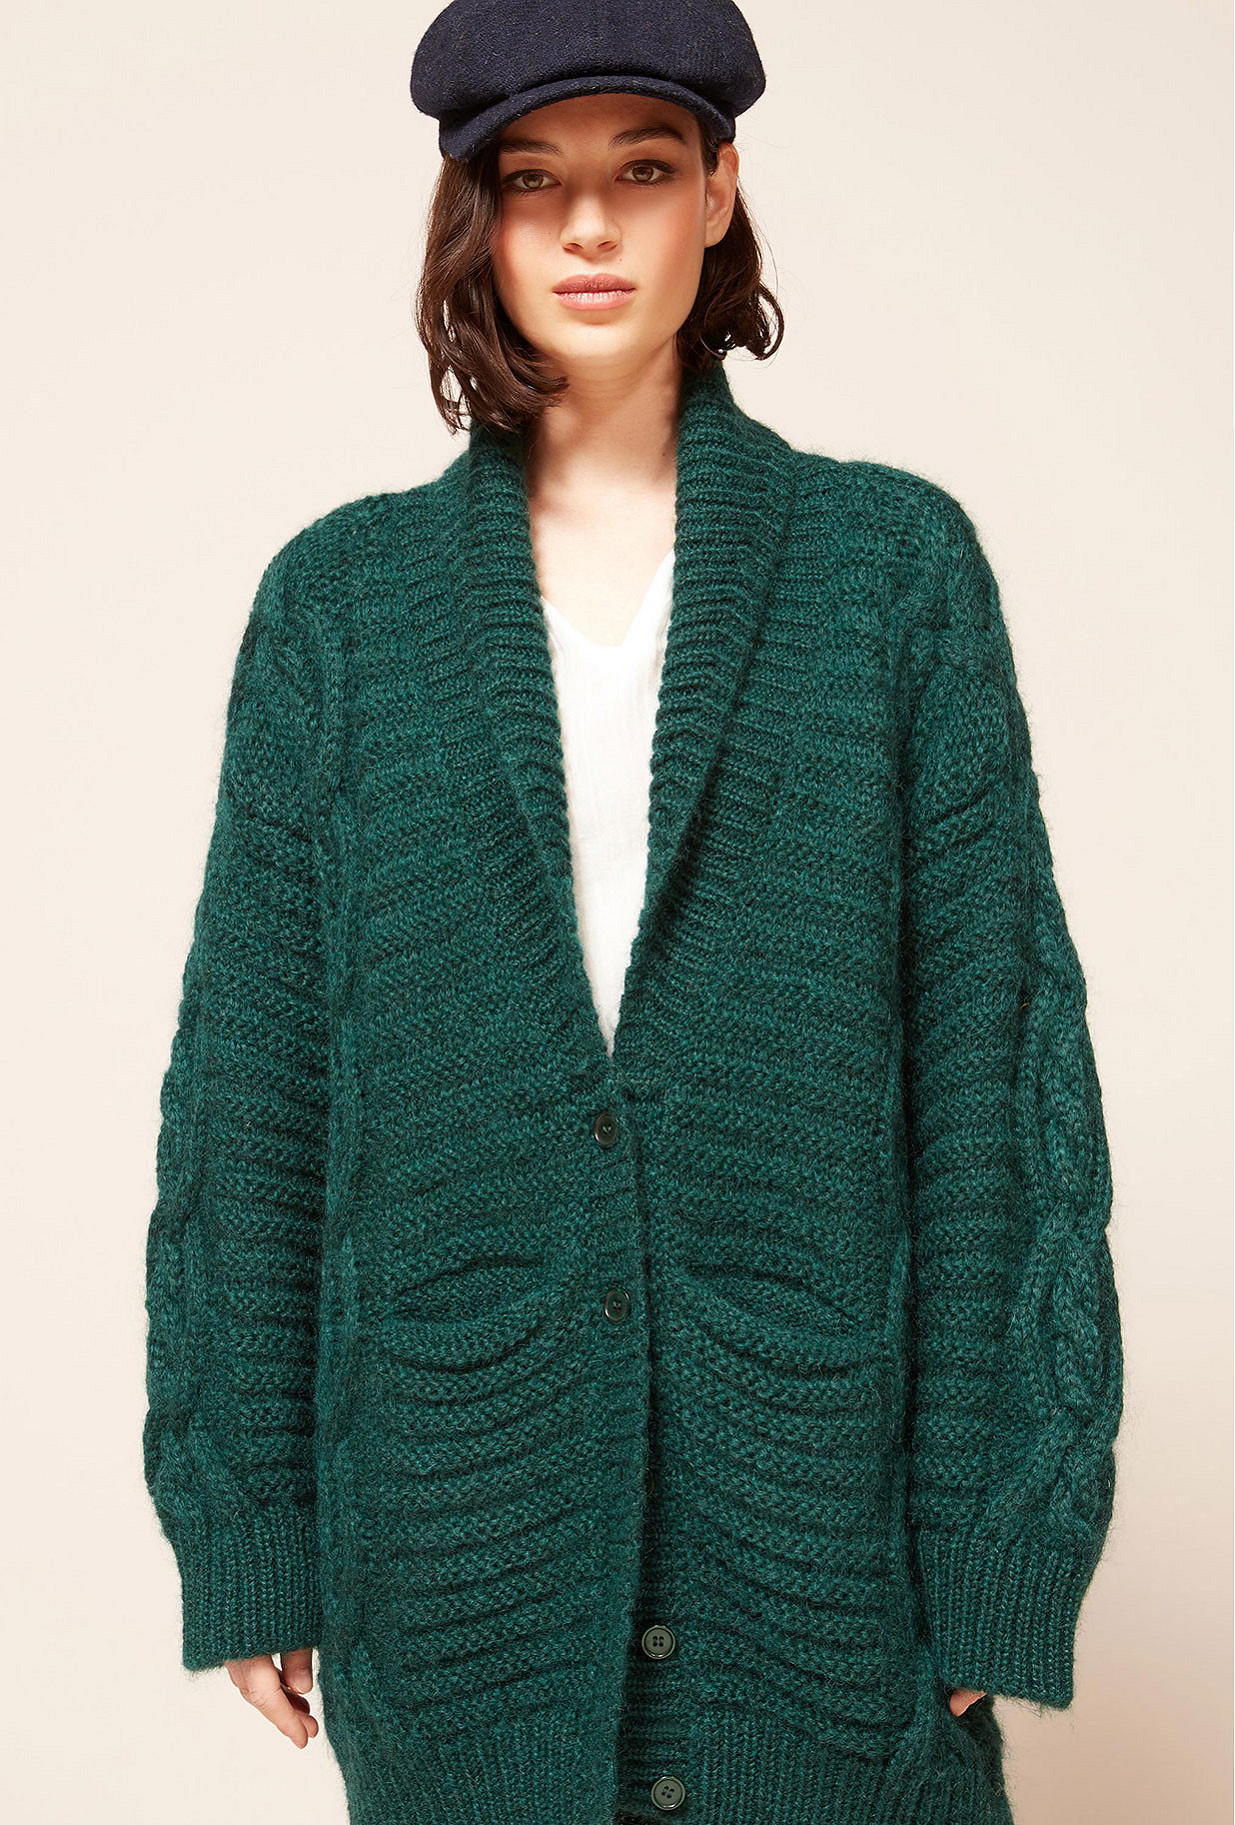  Cardigan  Vert  hiver pour femme  Mod le Coaz Site de mode 